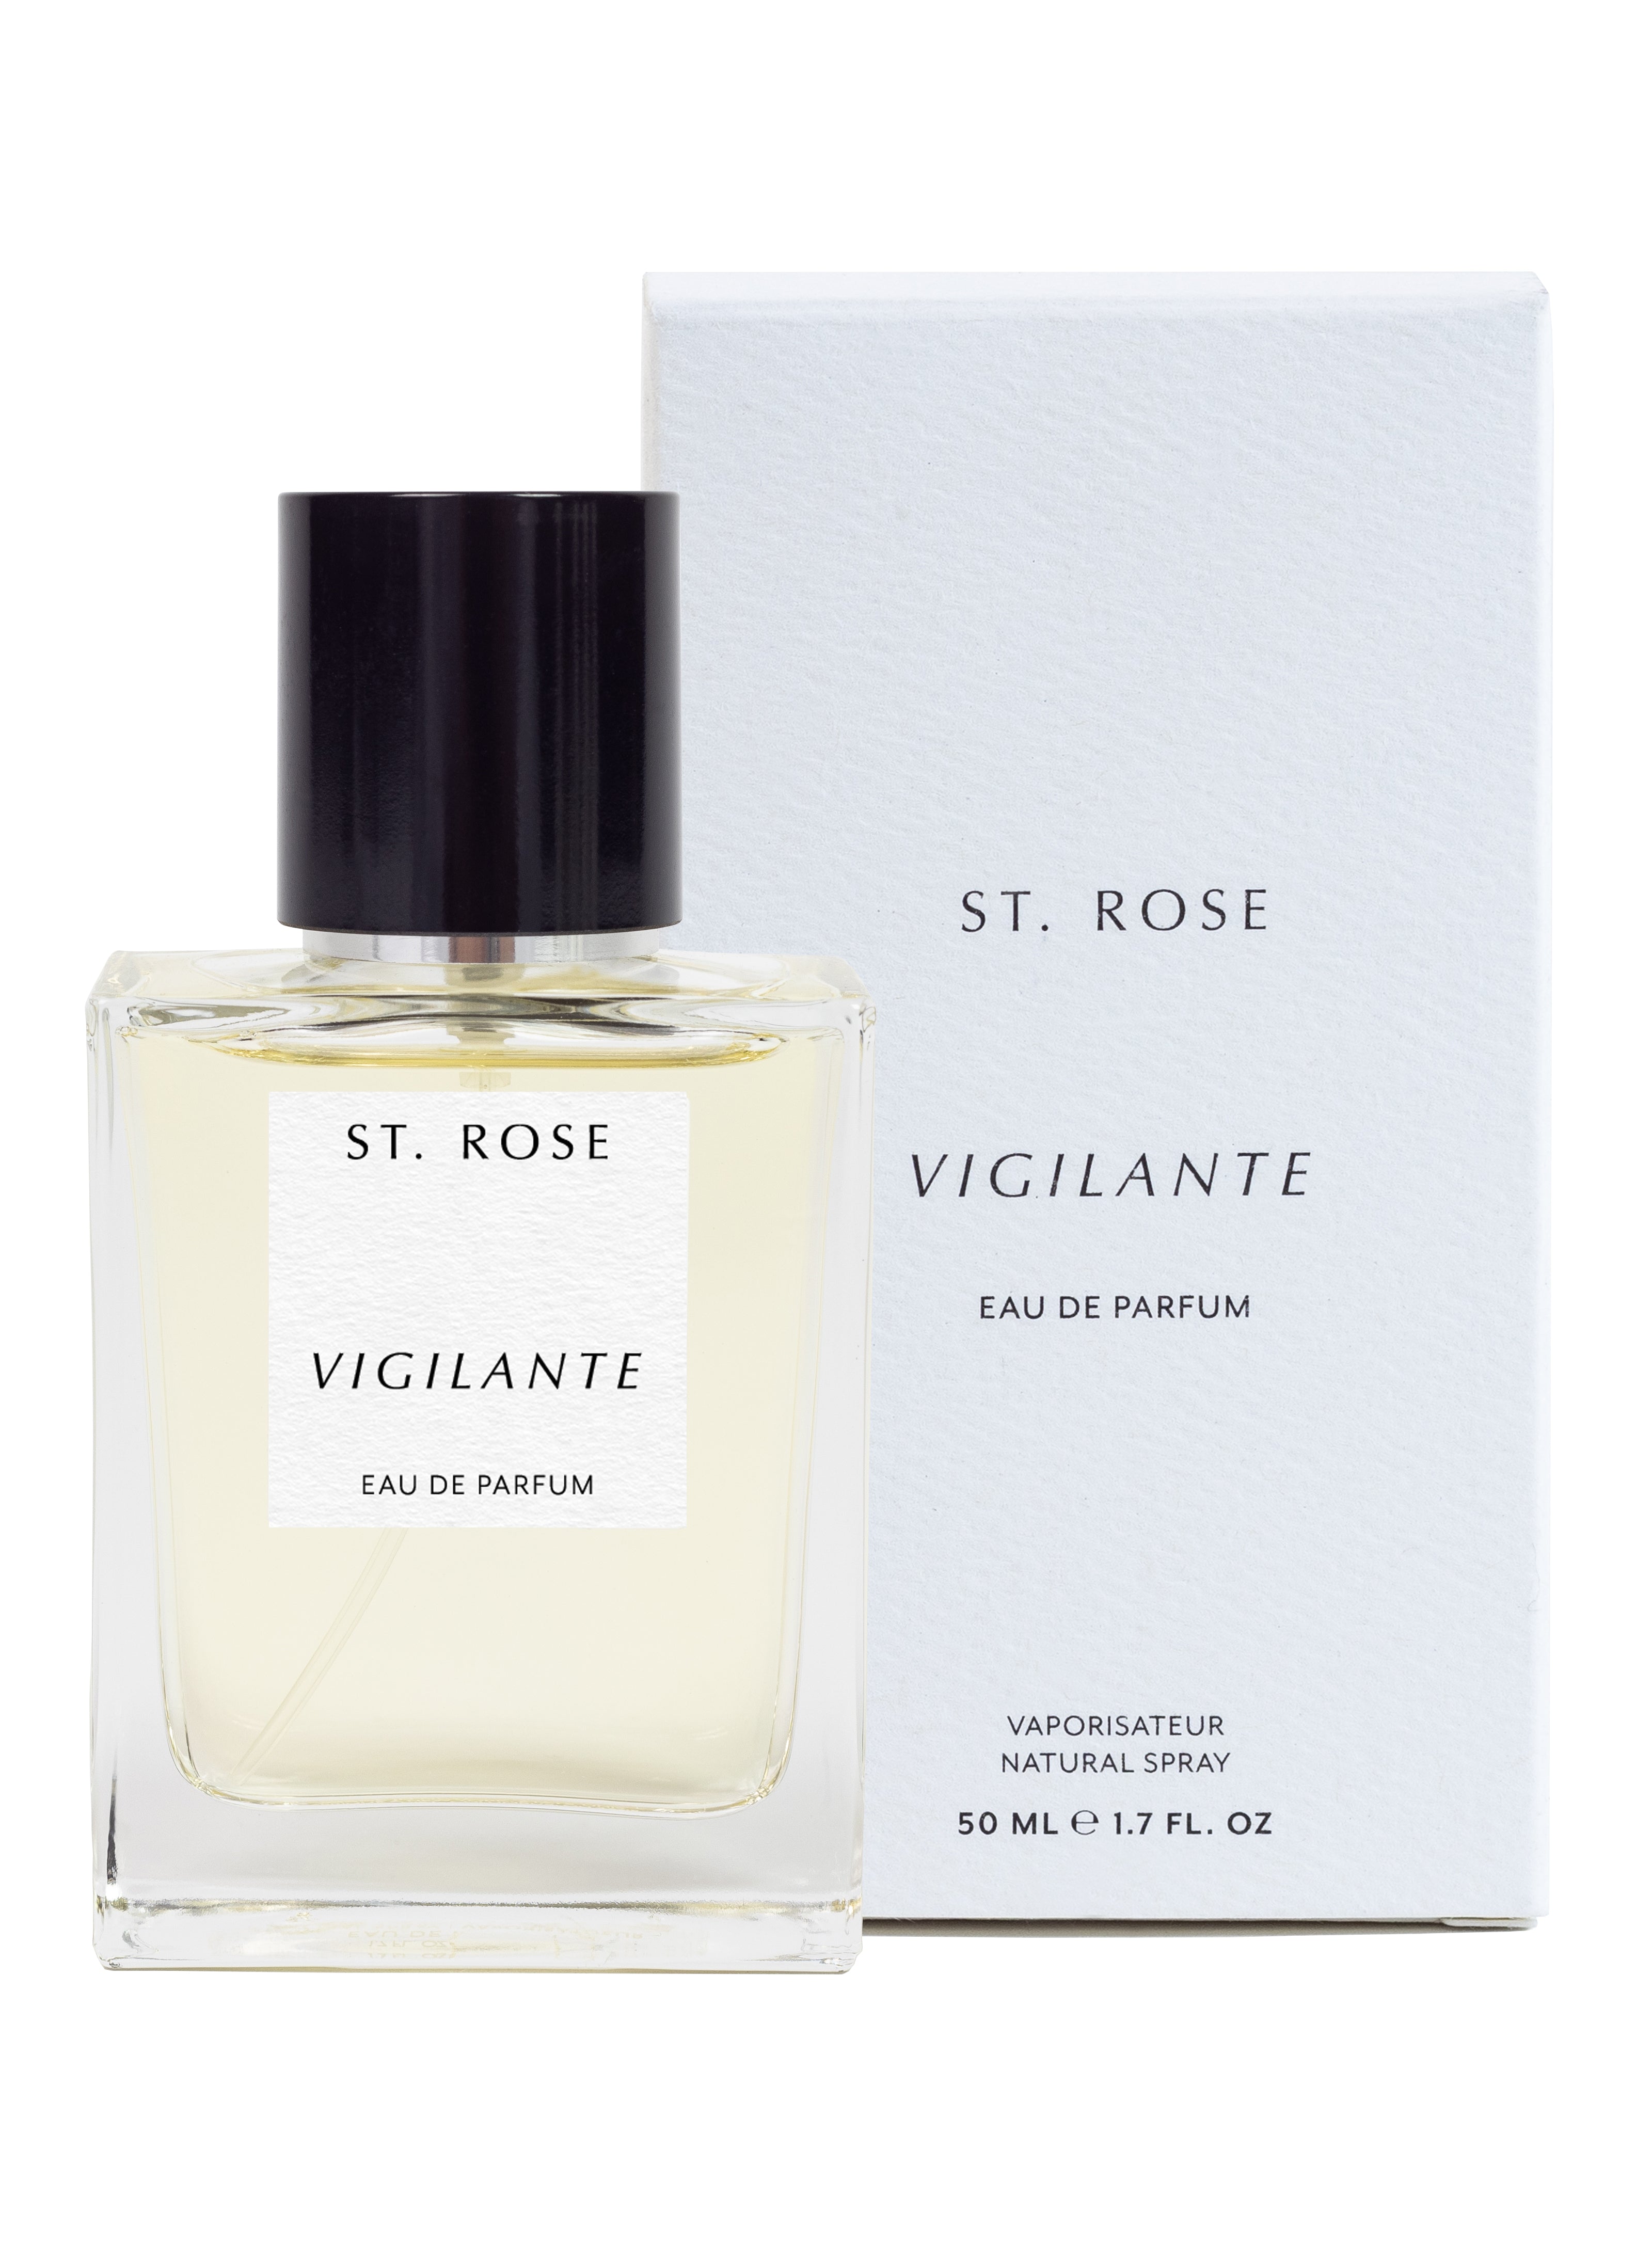 St. Rose Vigilante Eau de Parfum - Stèle